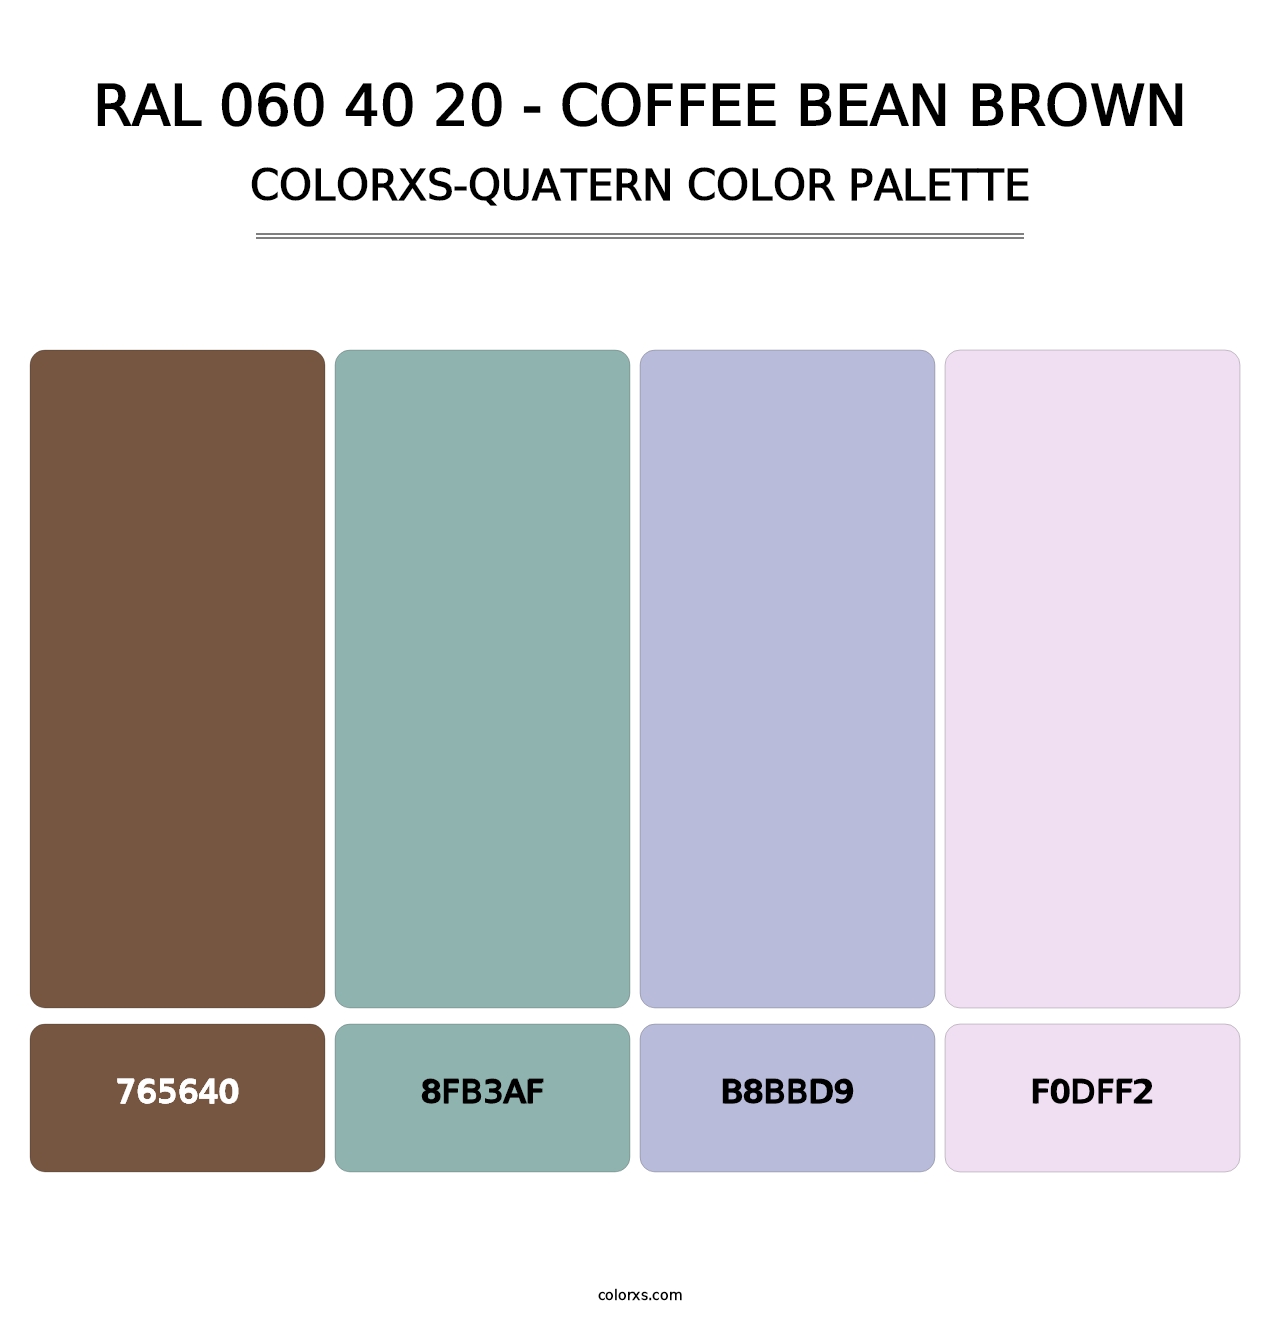 RAL 060 40 20 - Coffee Bean Brown - Colorxs Quatern Palette